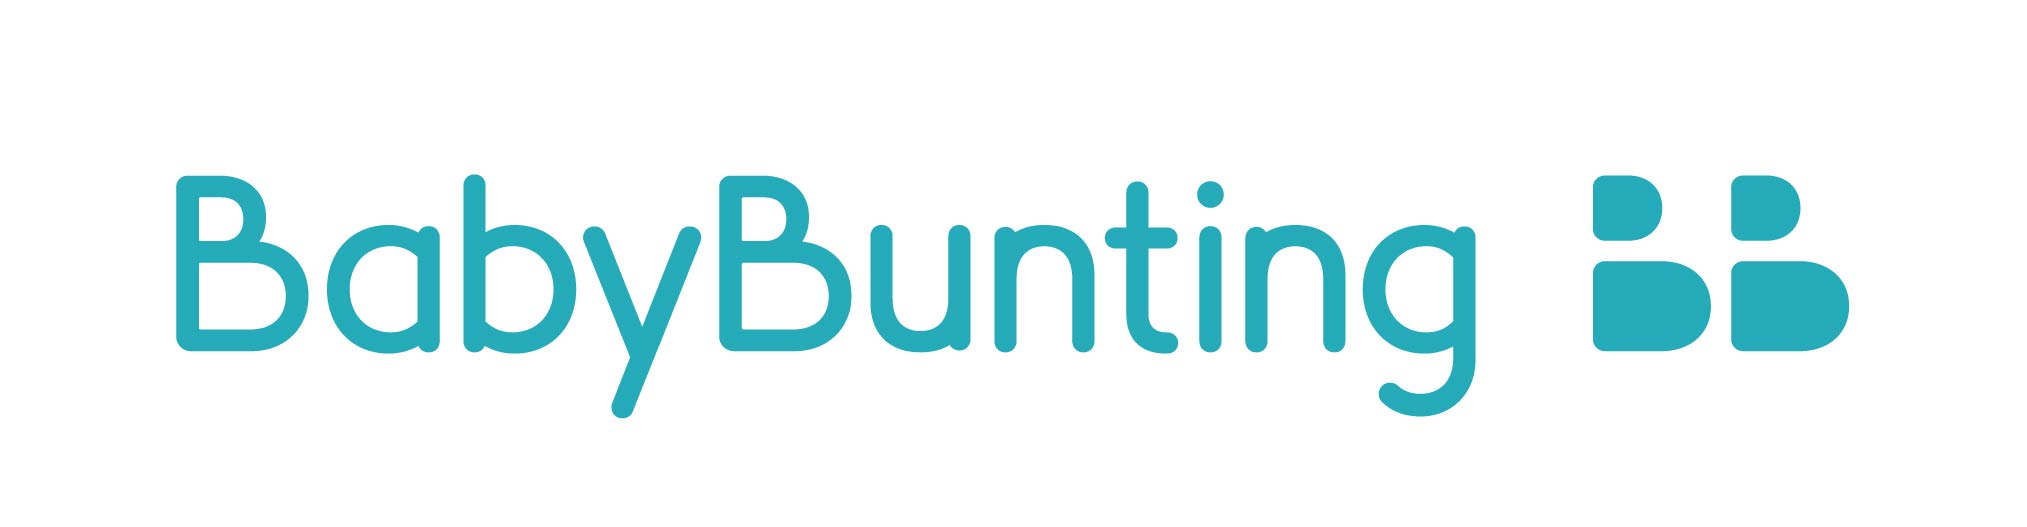 Baby Bunting_logo